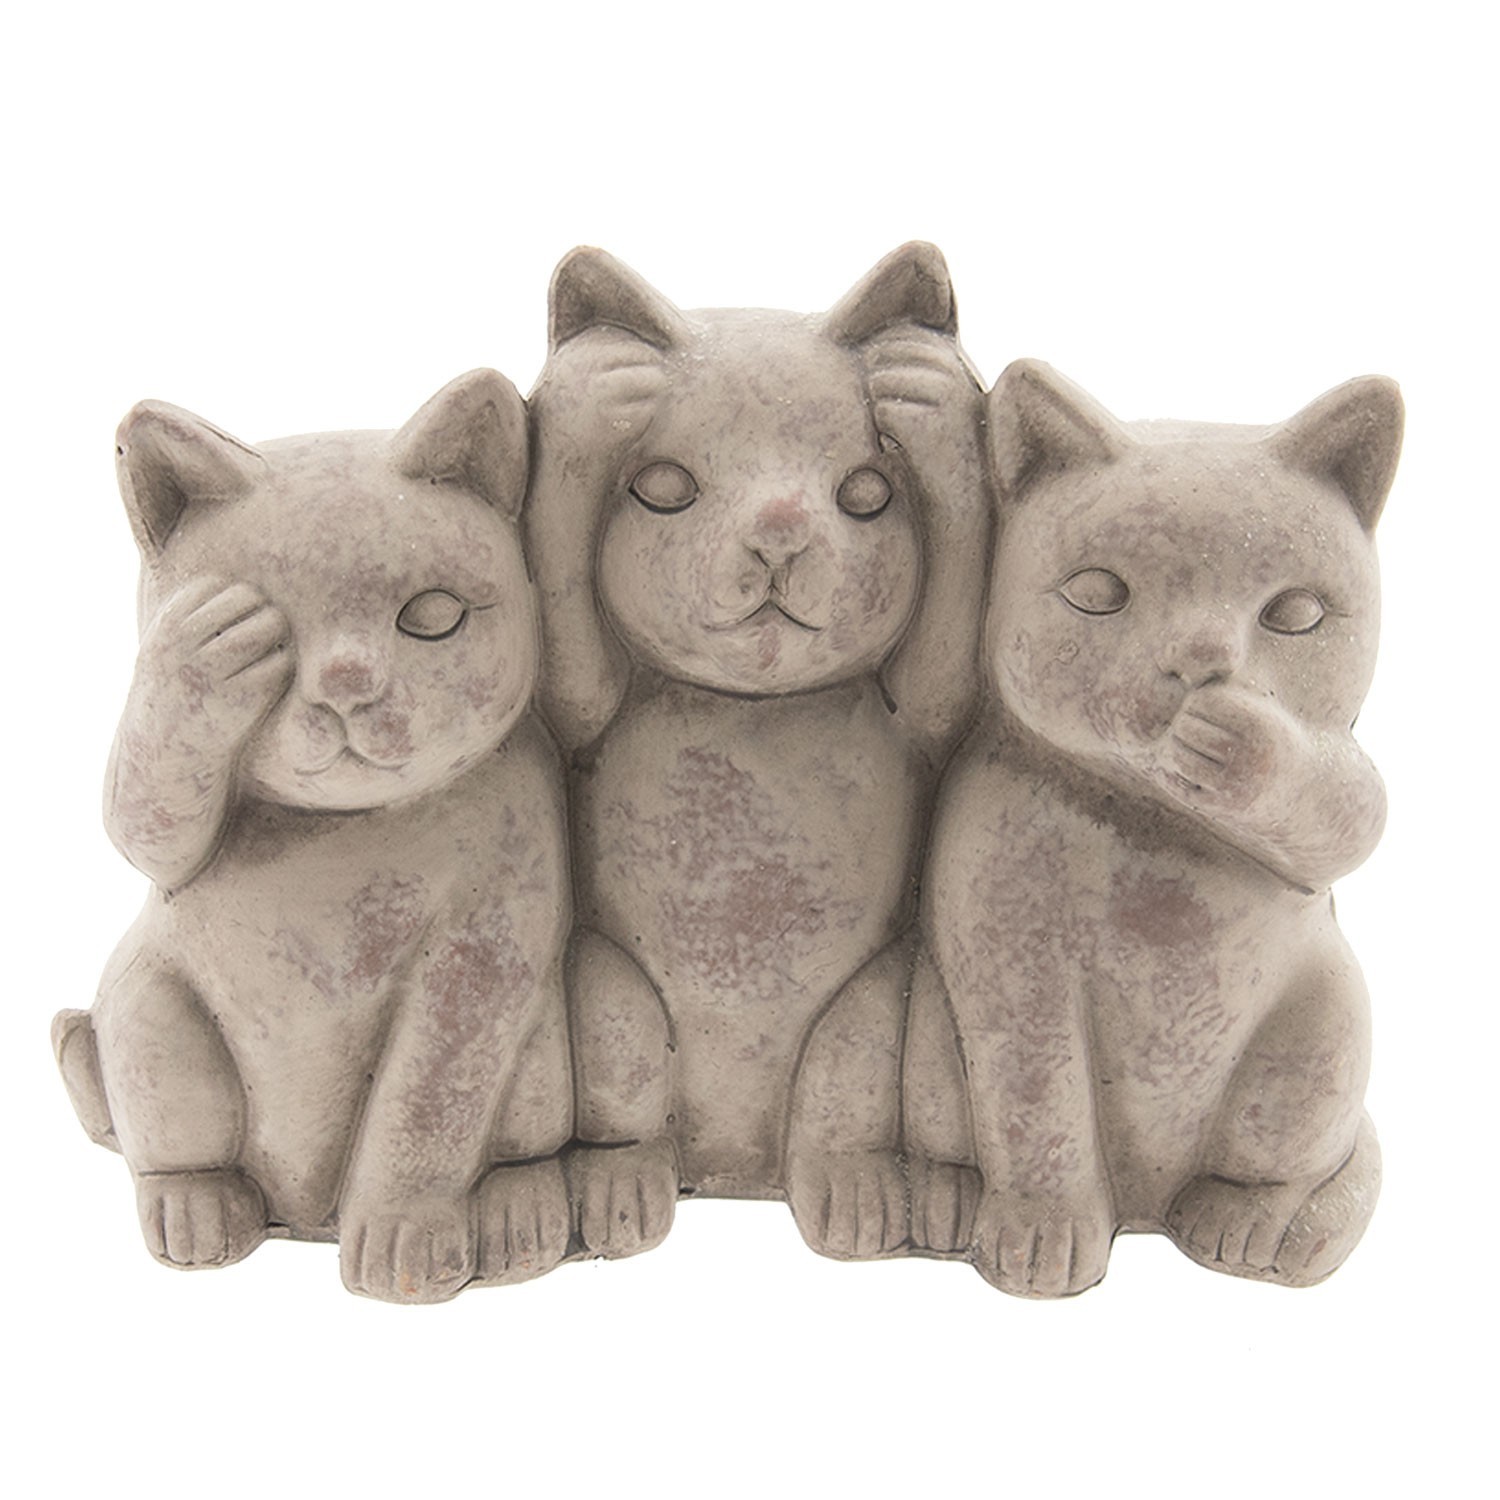 Dekorace sedící kočičky Cats - 22*10*16 cm 6TE0193